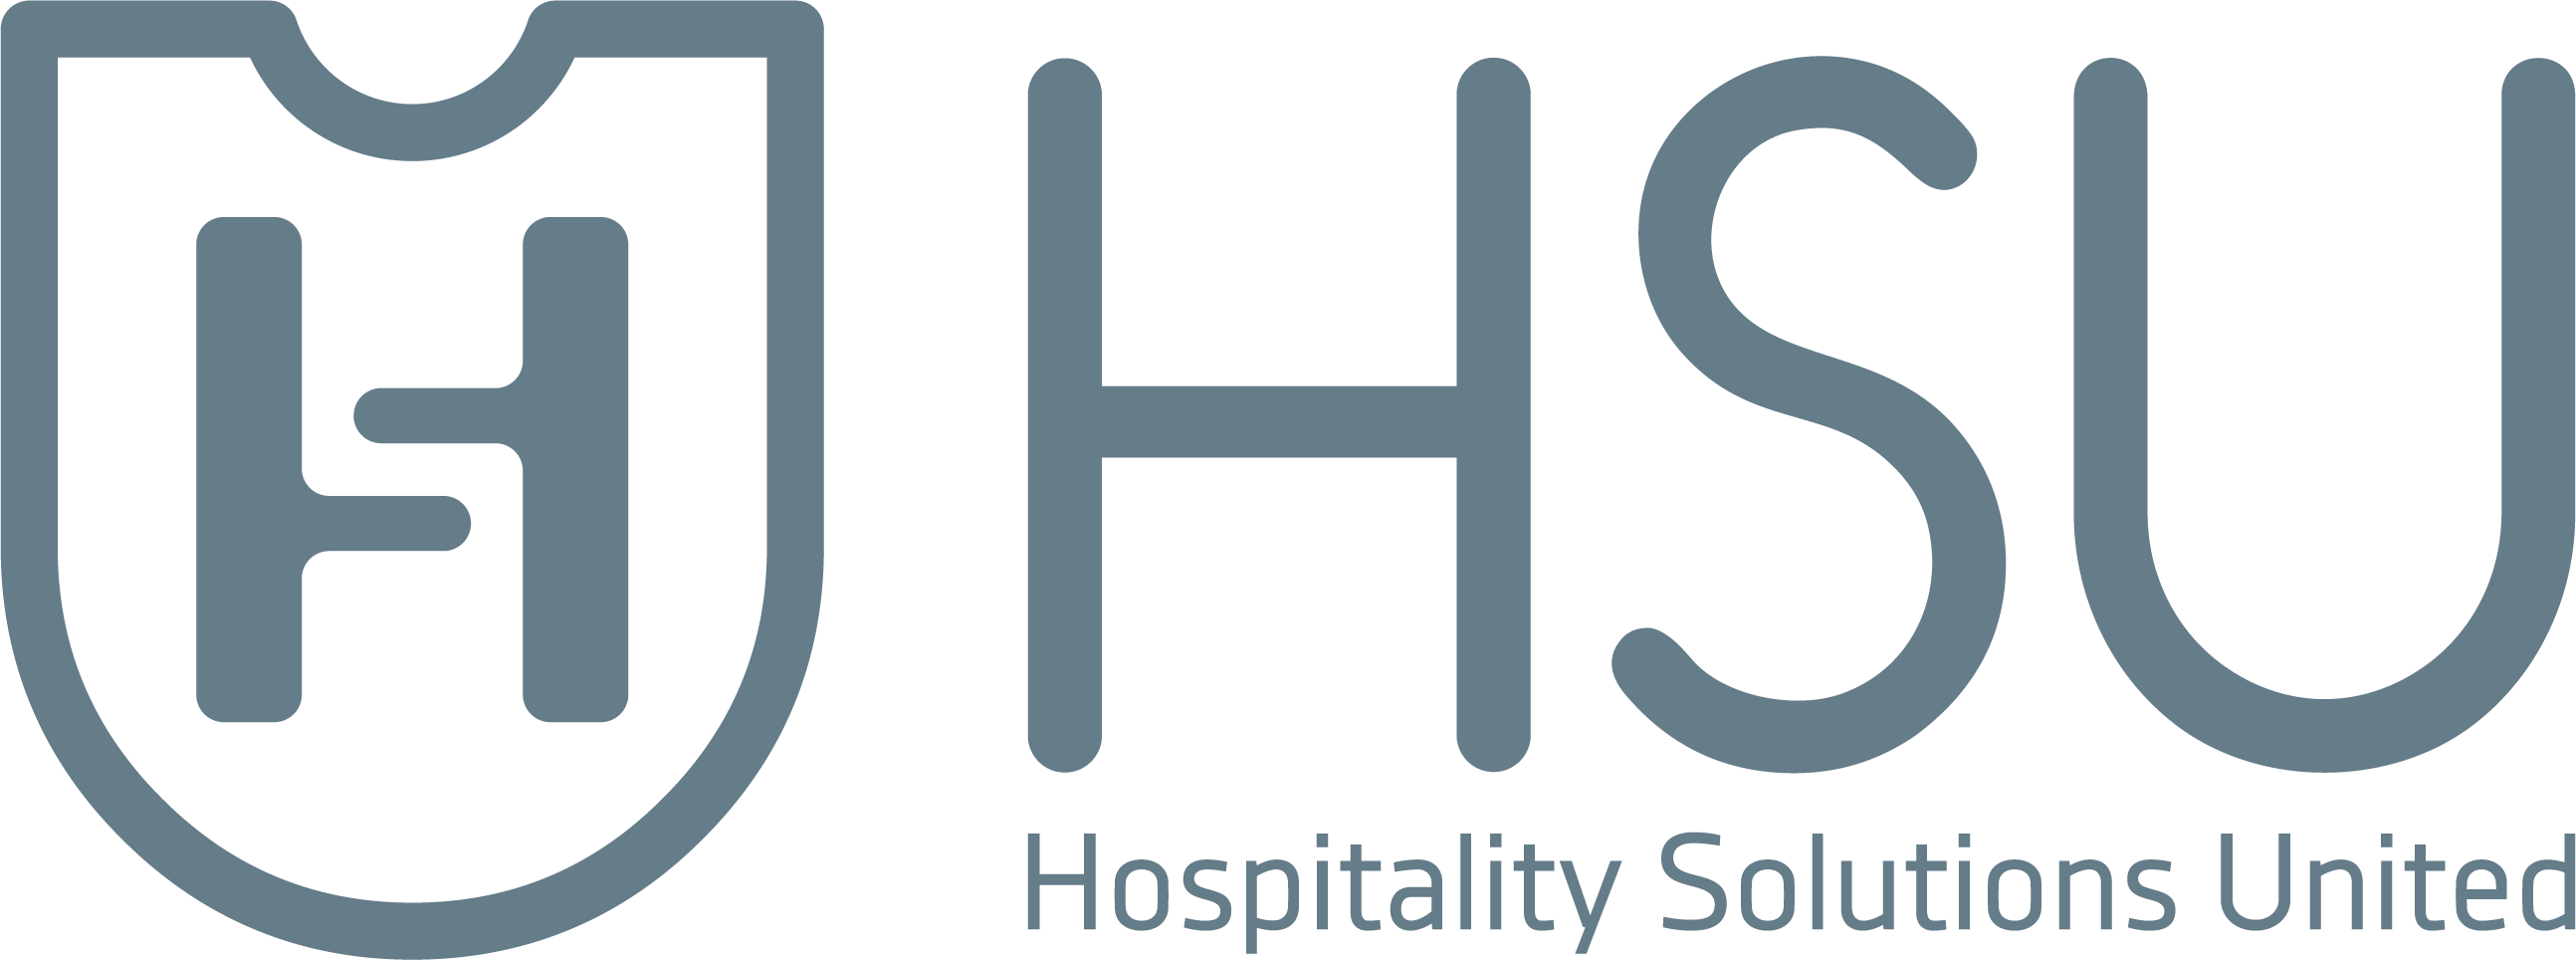 HSU - электронные замки для гостиниц